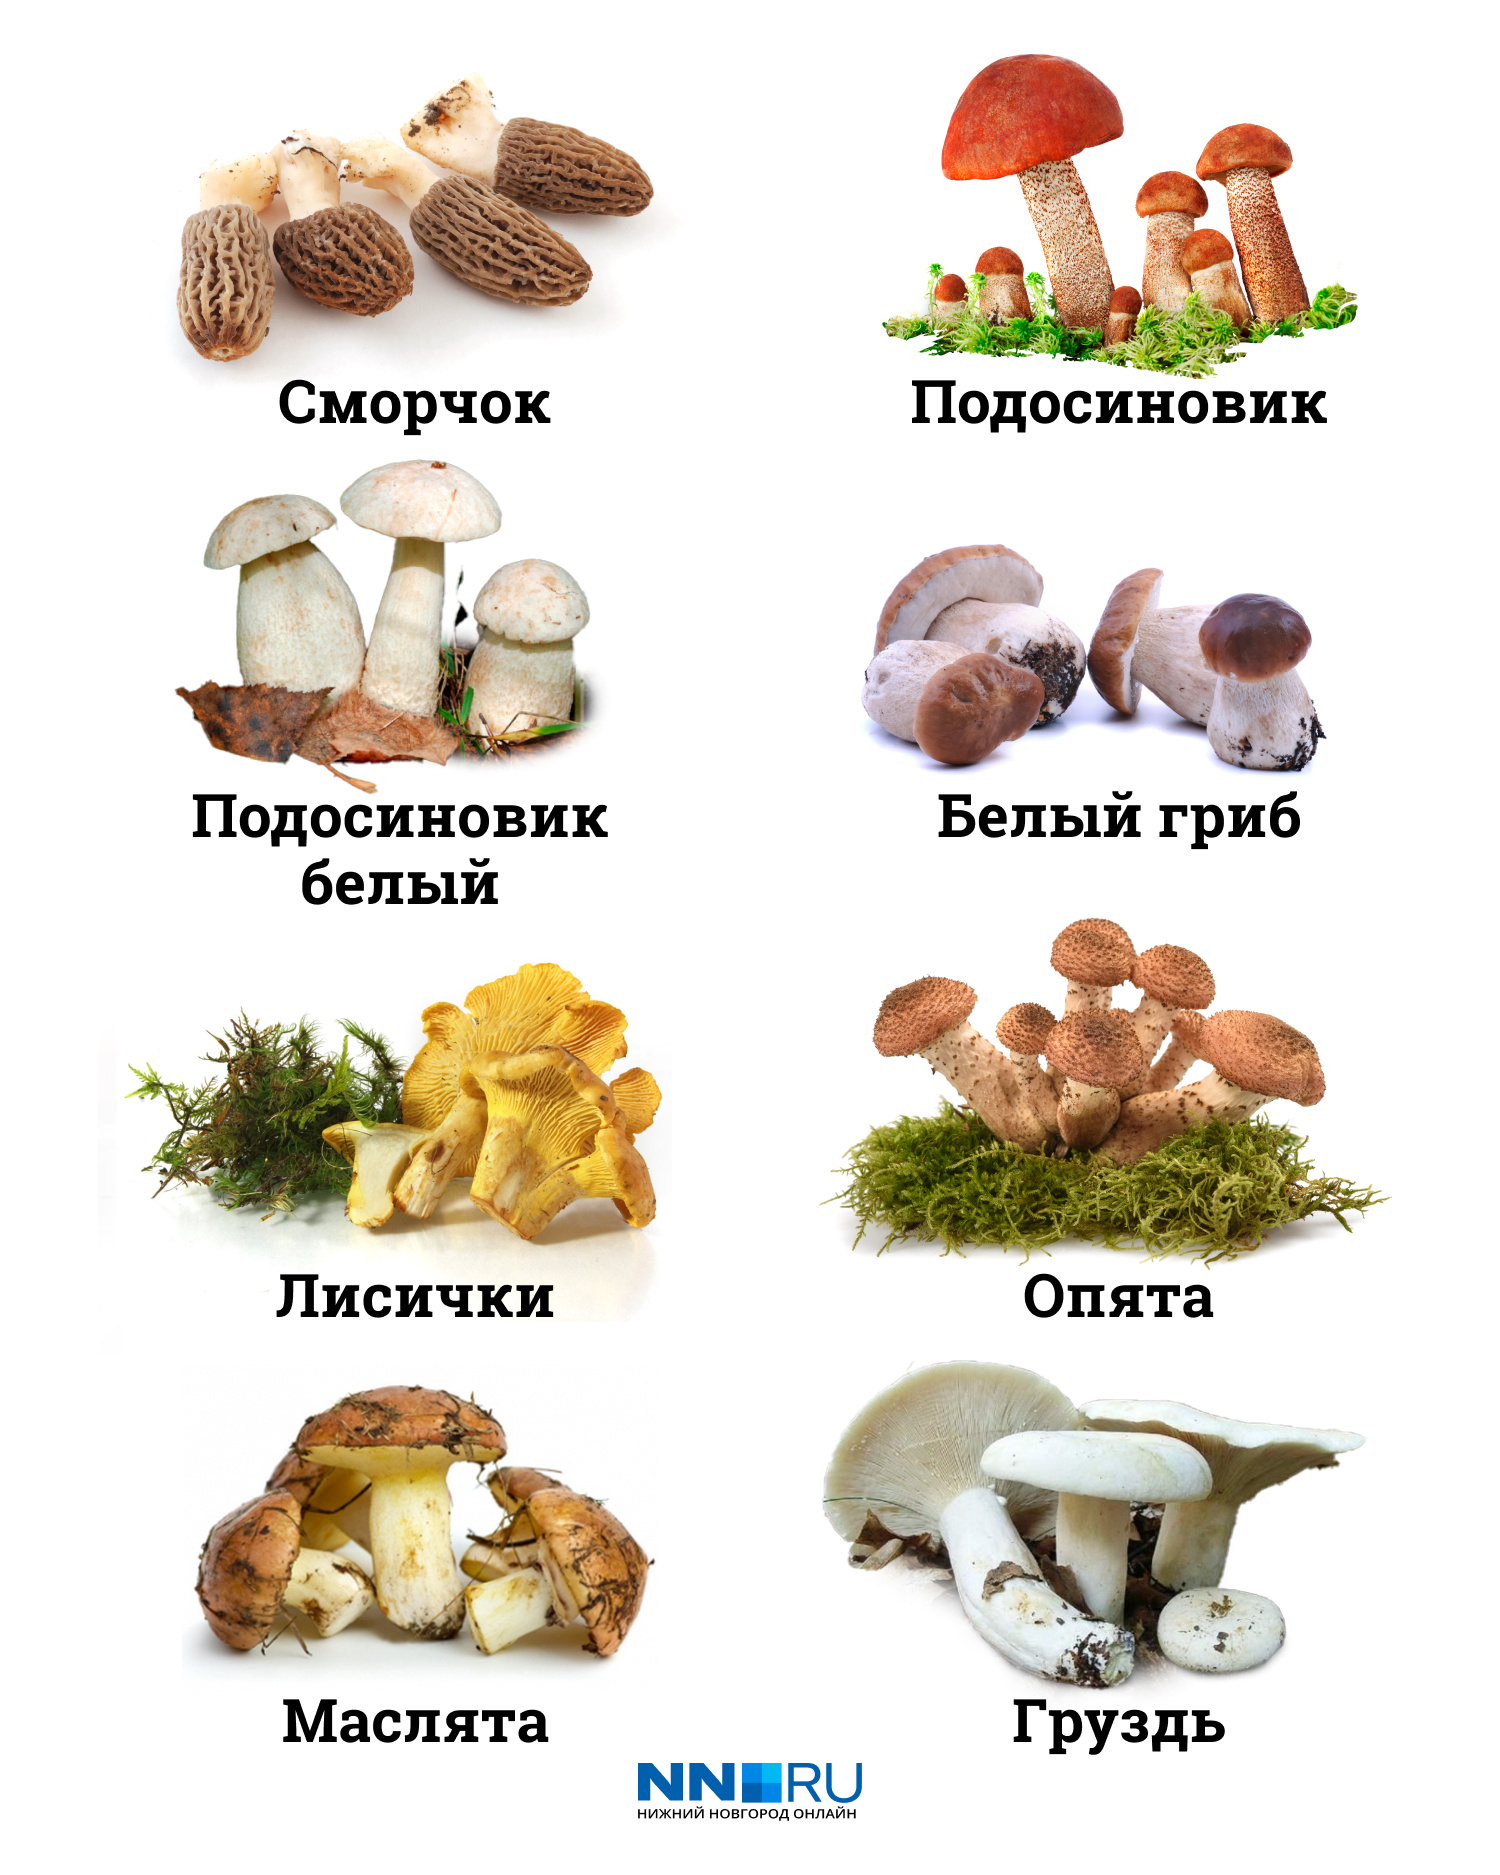 Все грибы с этой картинки можно найти в нижегородских лесах